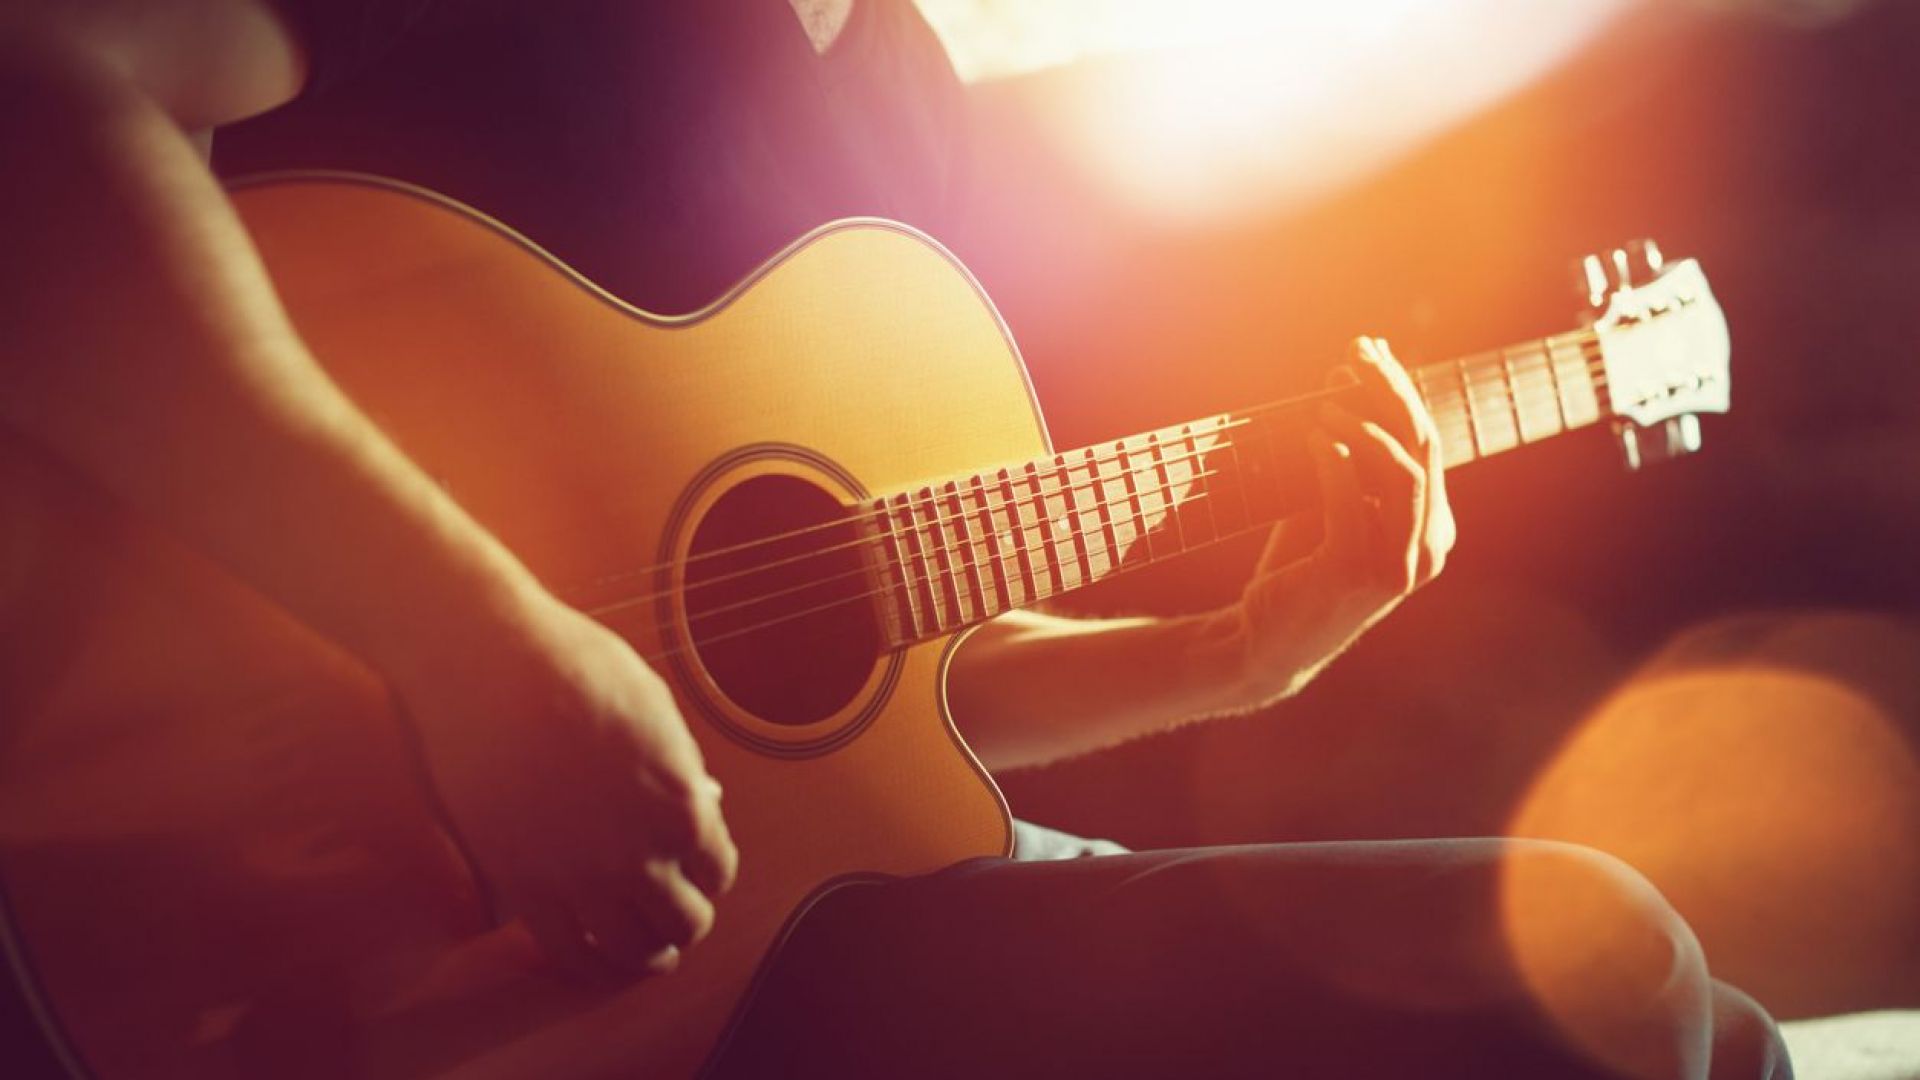 Марката китари "Фендър" предлага безплатни 3-месечни уроци